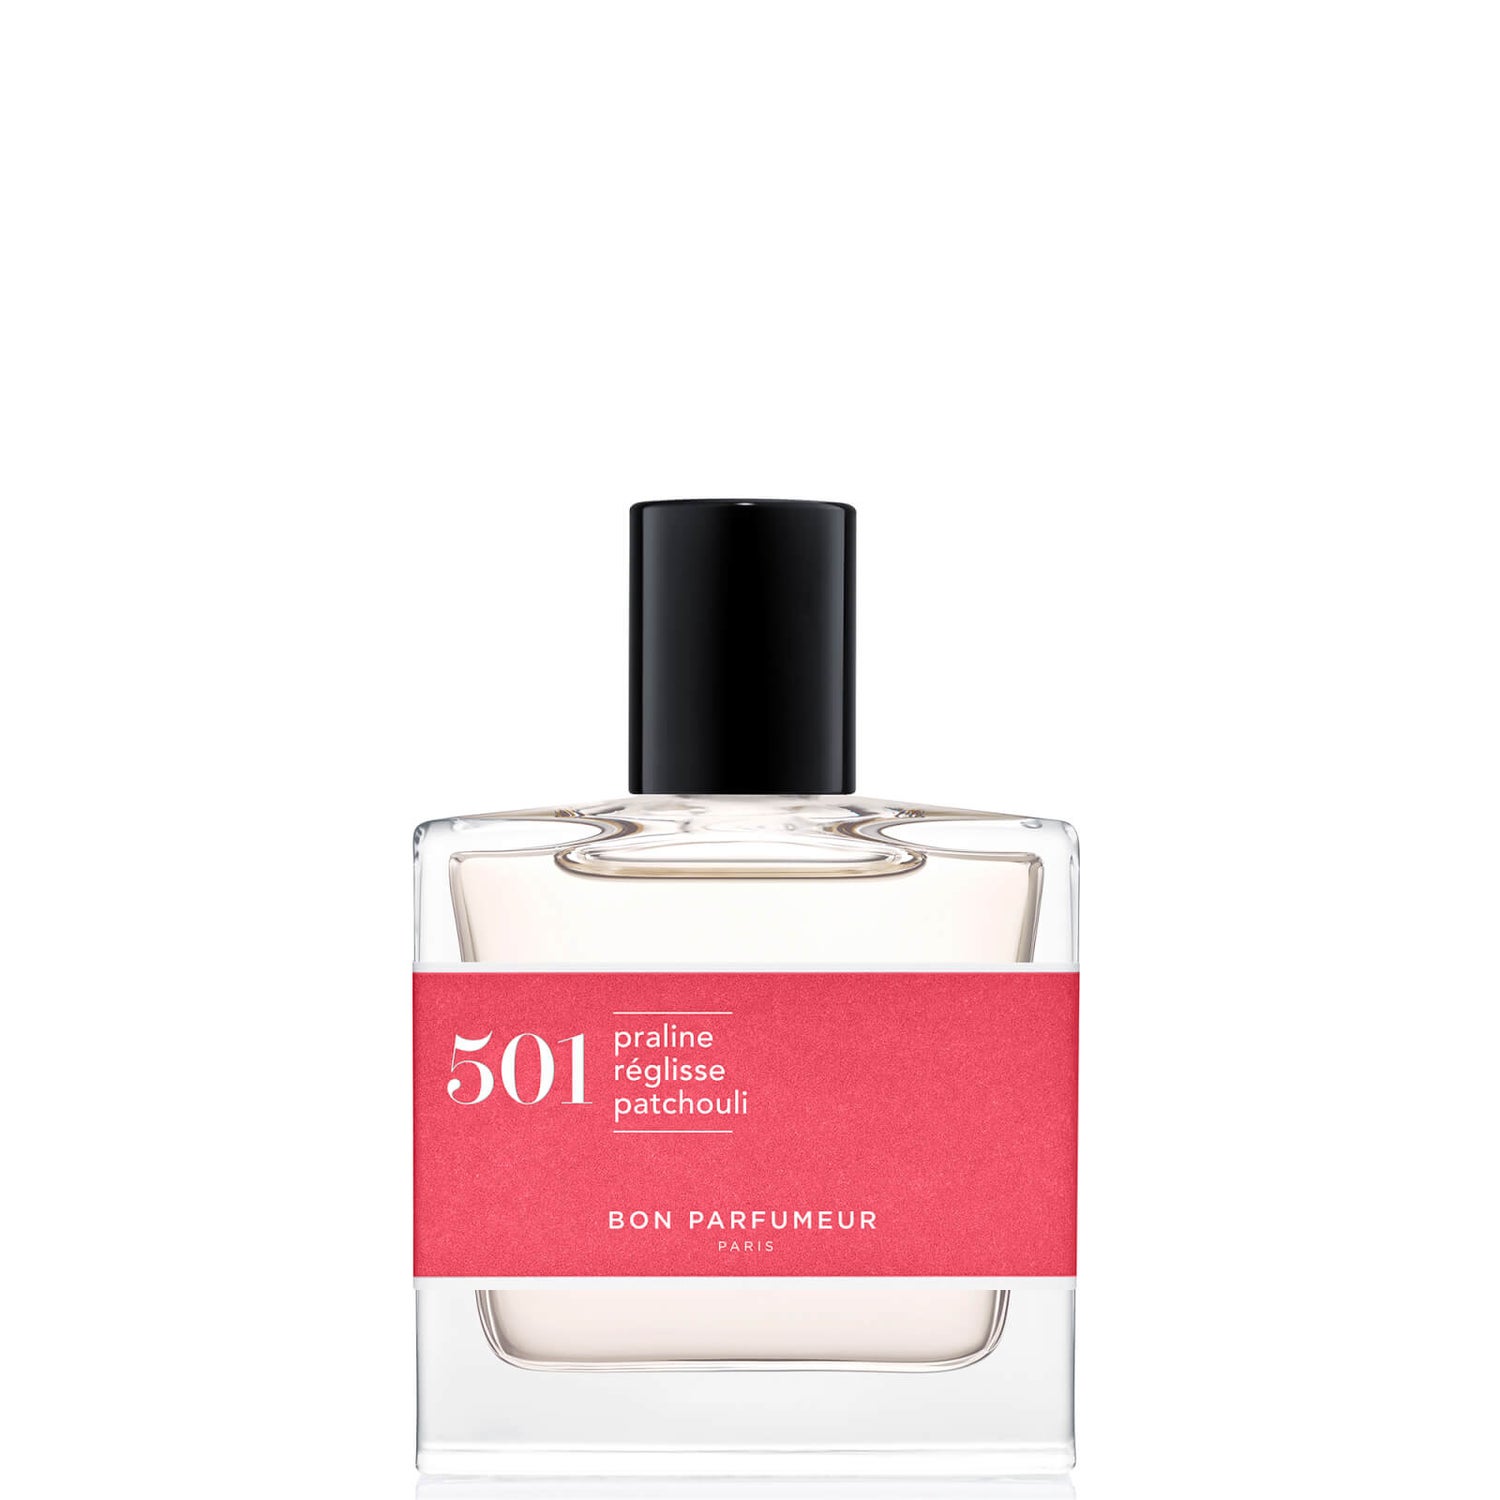 Bon Parfumeur 501 Praline Licorice Patchouli Eau de Parfum - 30 ml